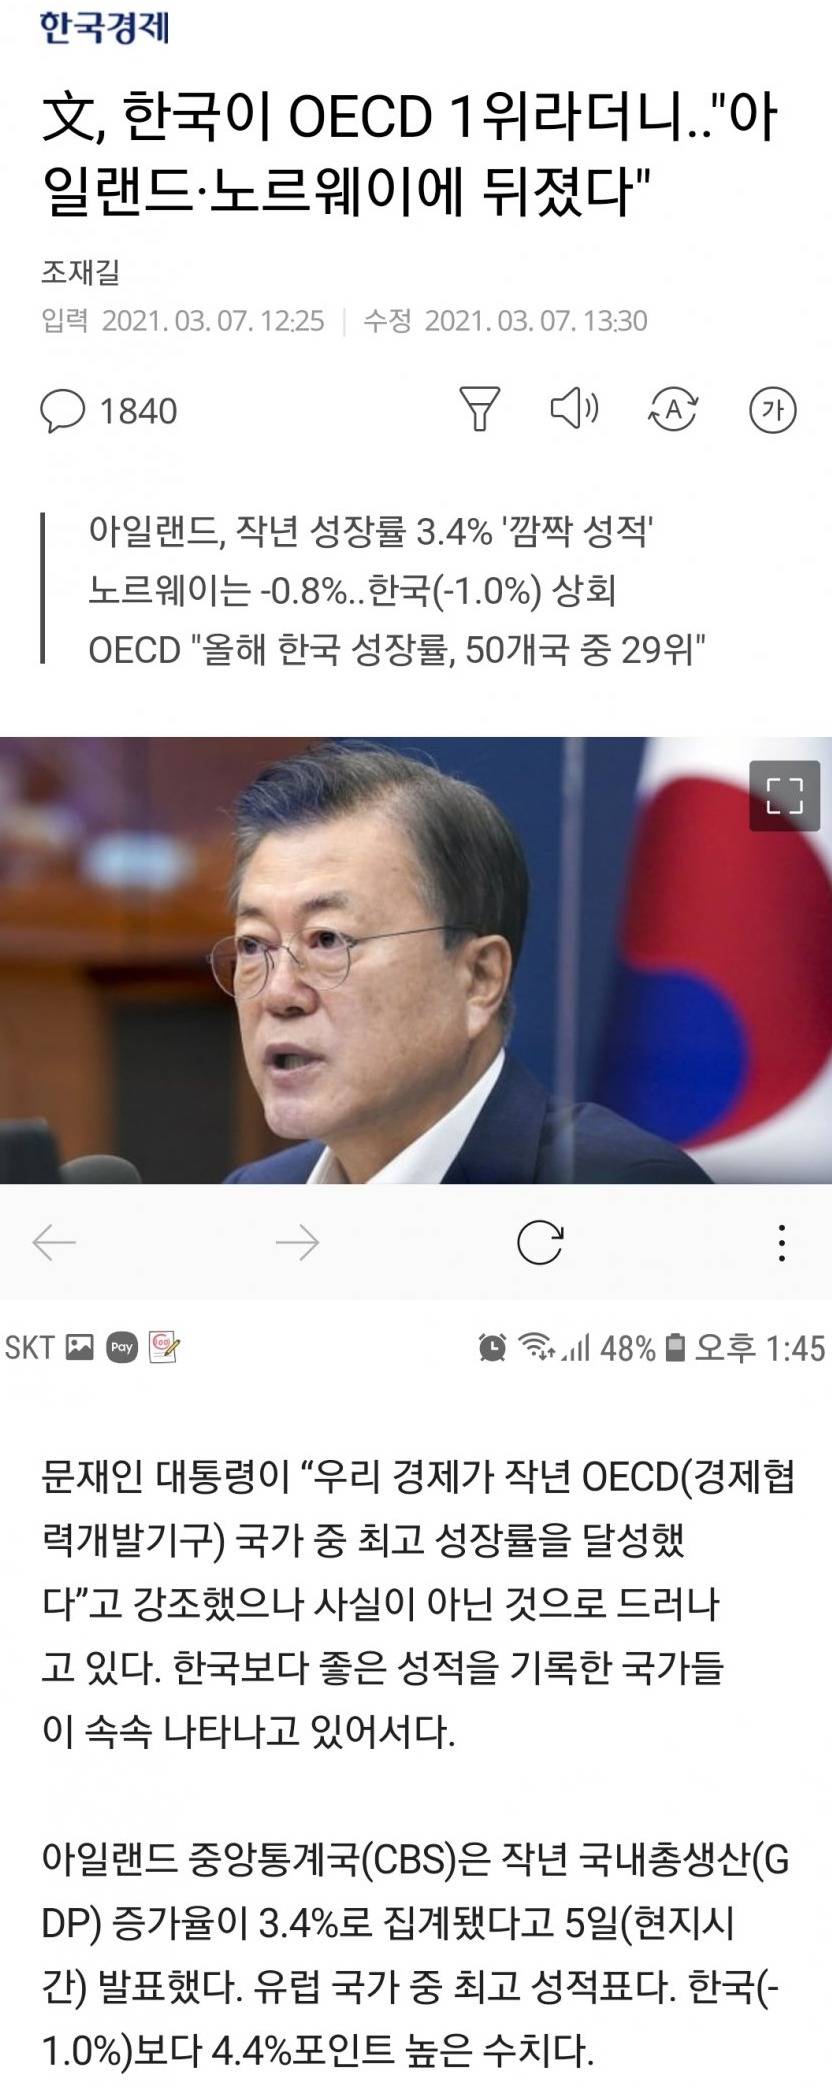 한국이 OECD 1위라더니